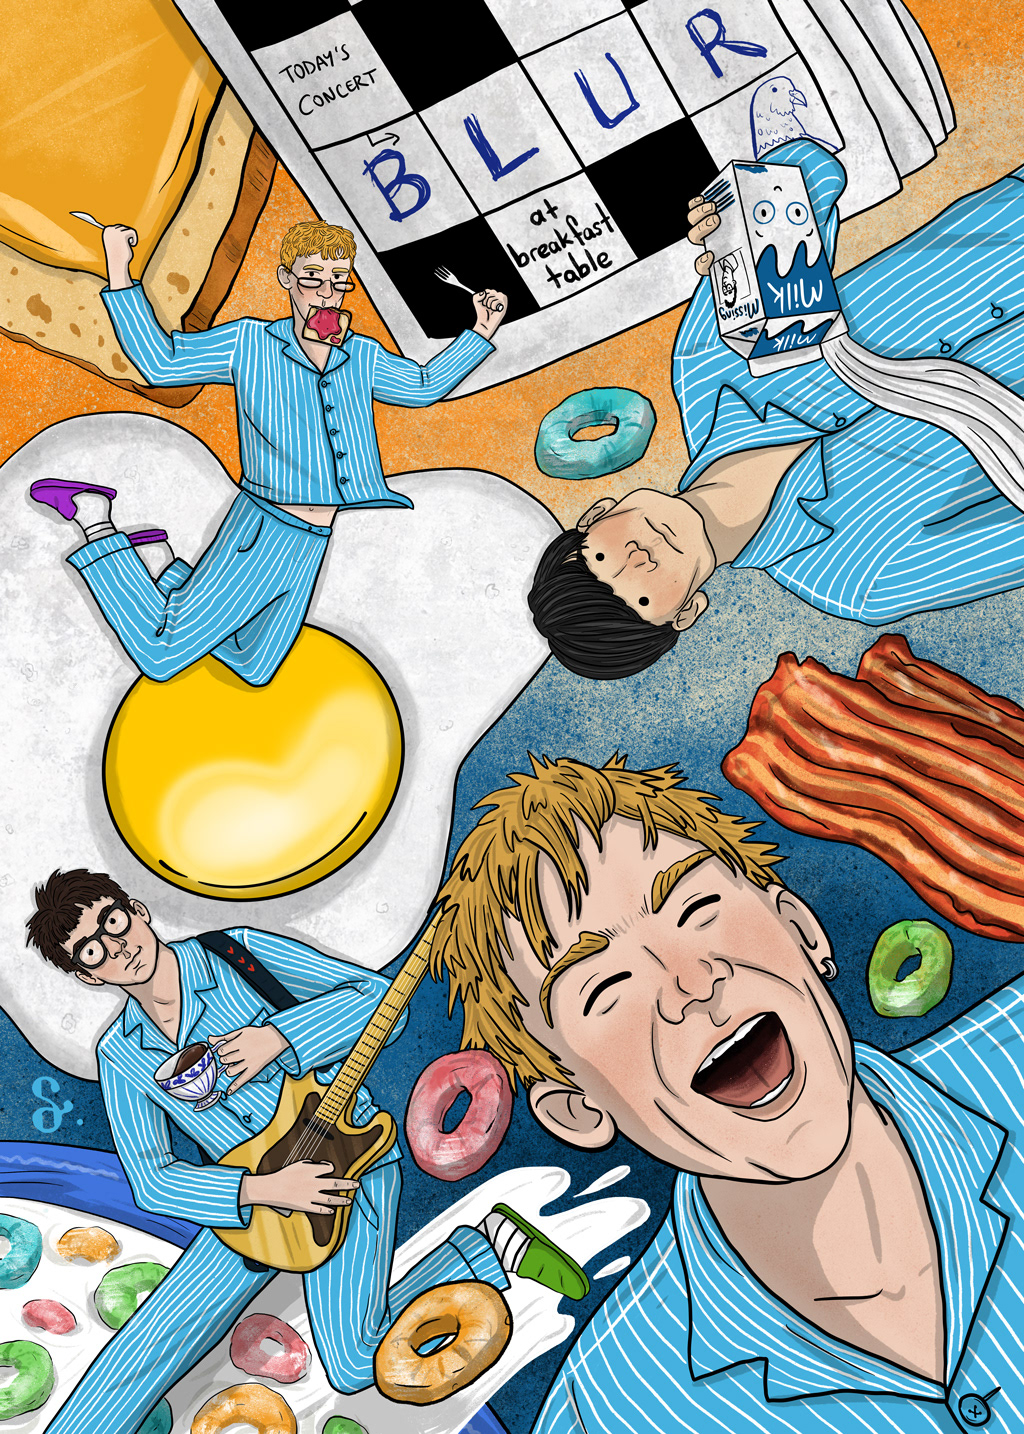 blur concert poster ILLUSTRATION  illustrasyon breakfast gig blur band Damon Albarn dream gigs illustrated